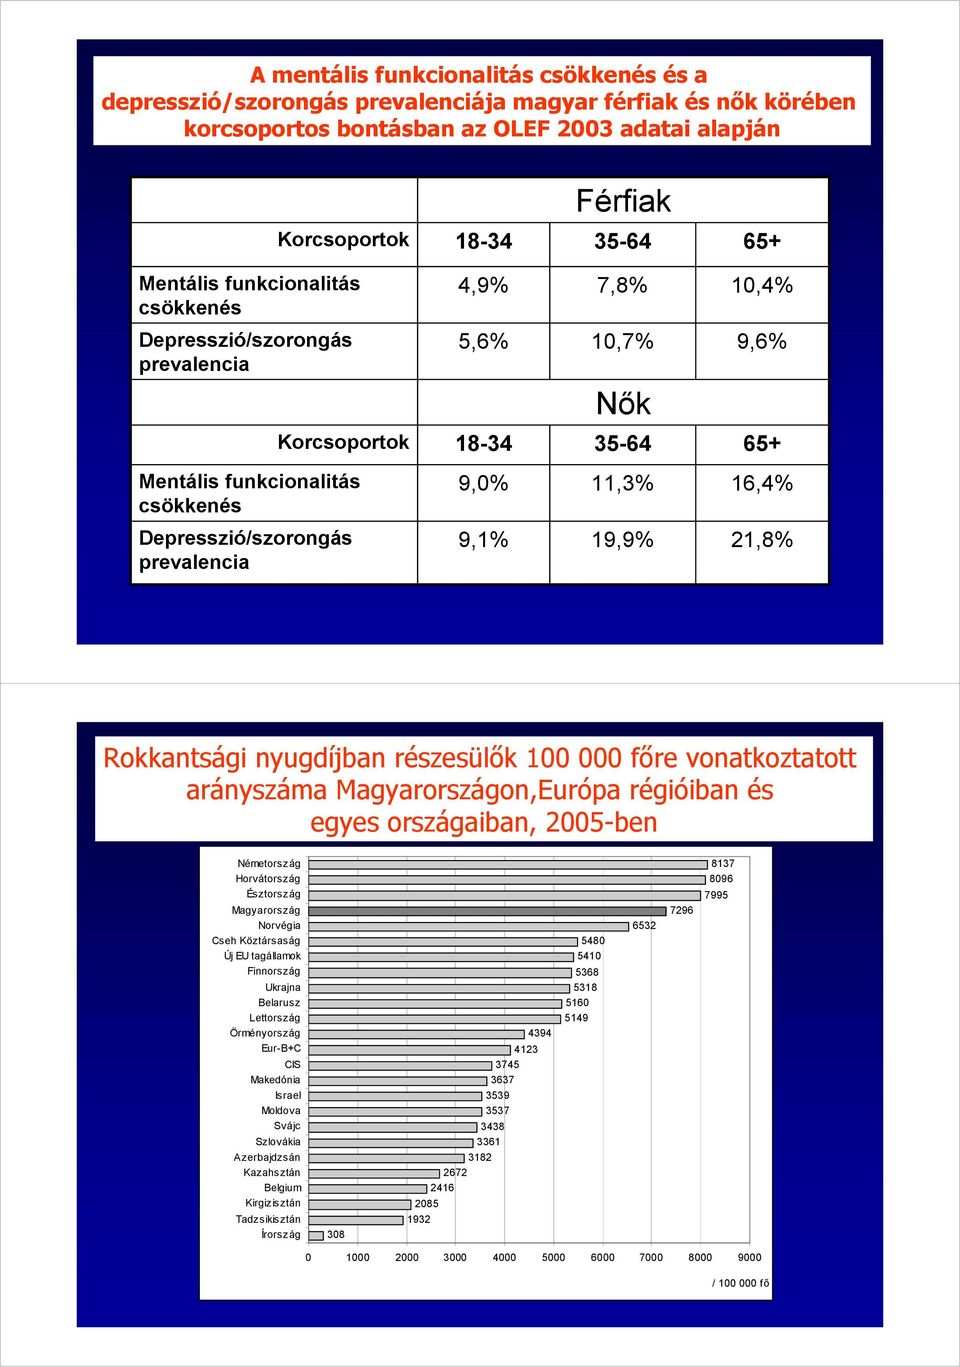 Depresszió/szorongás prevalencia 9,1% 19,9% 21,8% Rokkantsági nyugdíjban részesülők 100 000 főre vonatkoztatott arányszáma Magyarországon,Európa régióiban és egyes országaiban, 2005-ben Németország